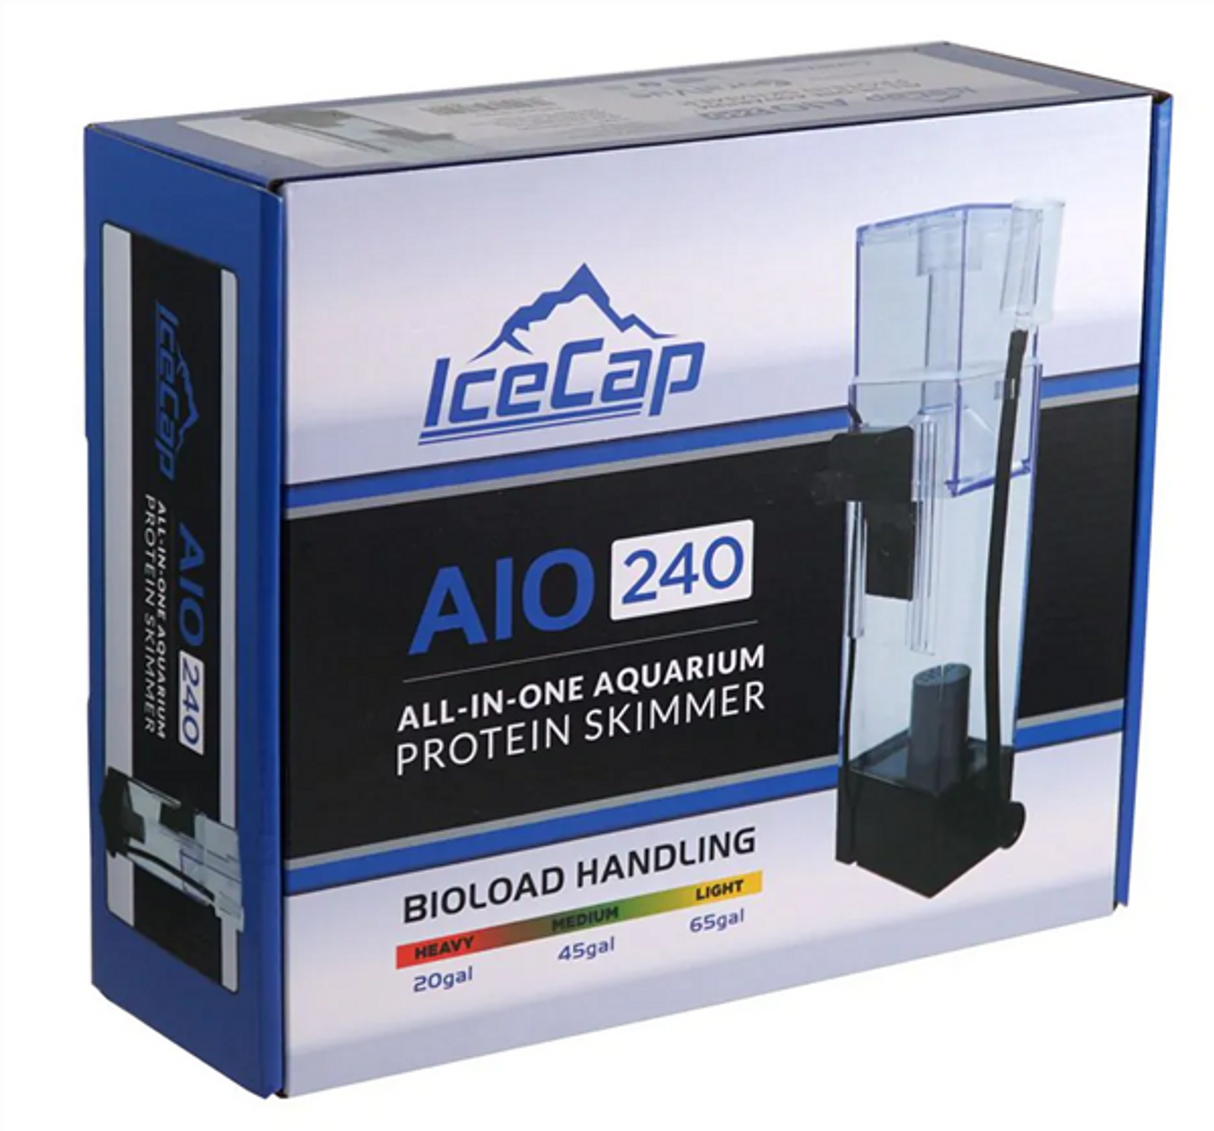 240 All-In-One Aquarium Protein Skimmer - Ice Cap - IceCap